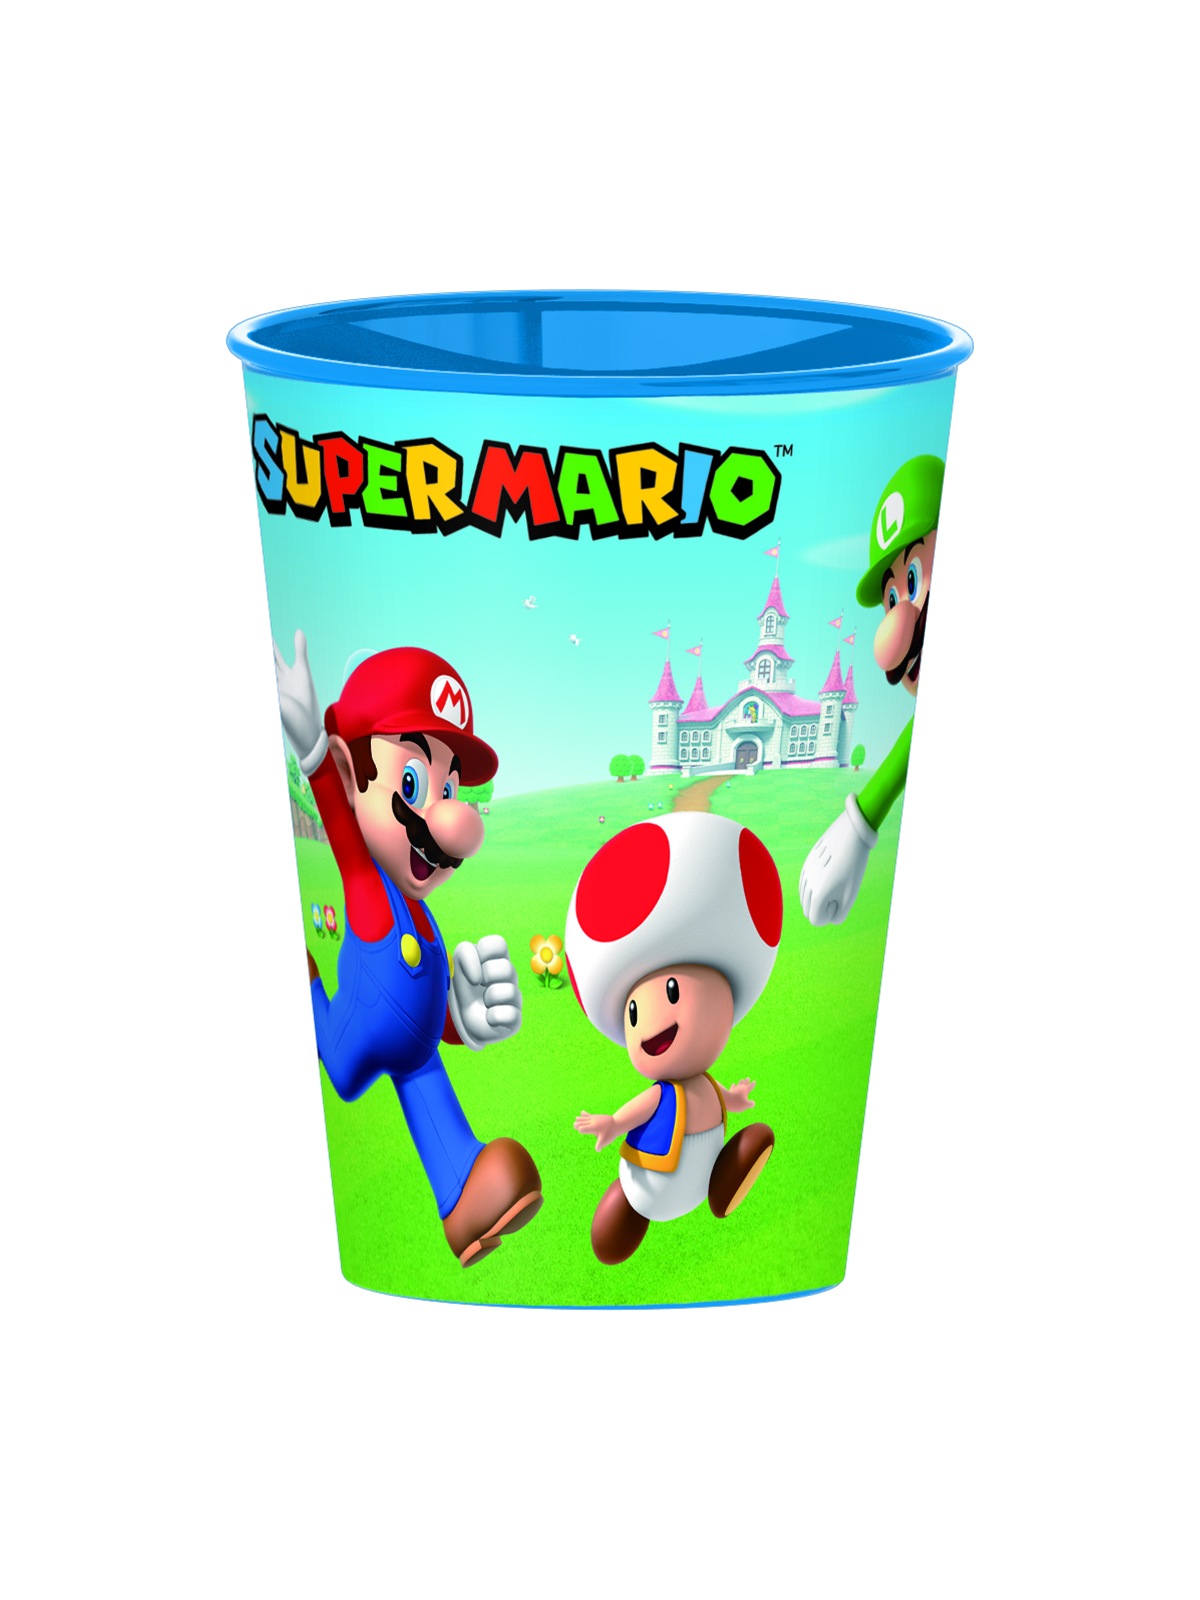 Accessori da viaggio dedicati a Super Mario